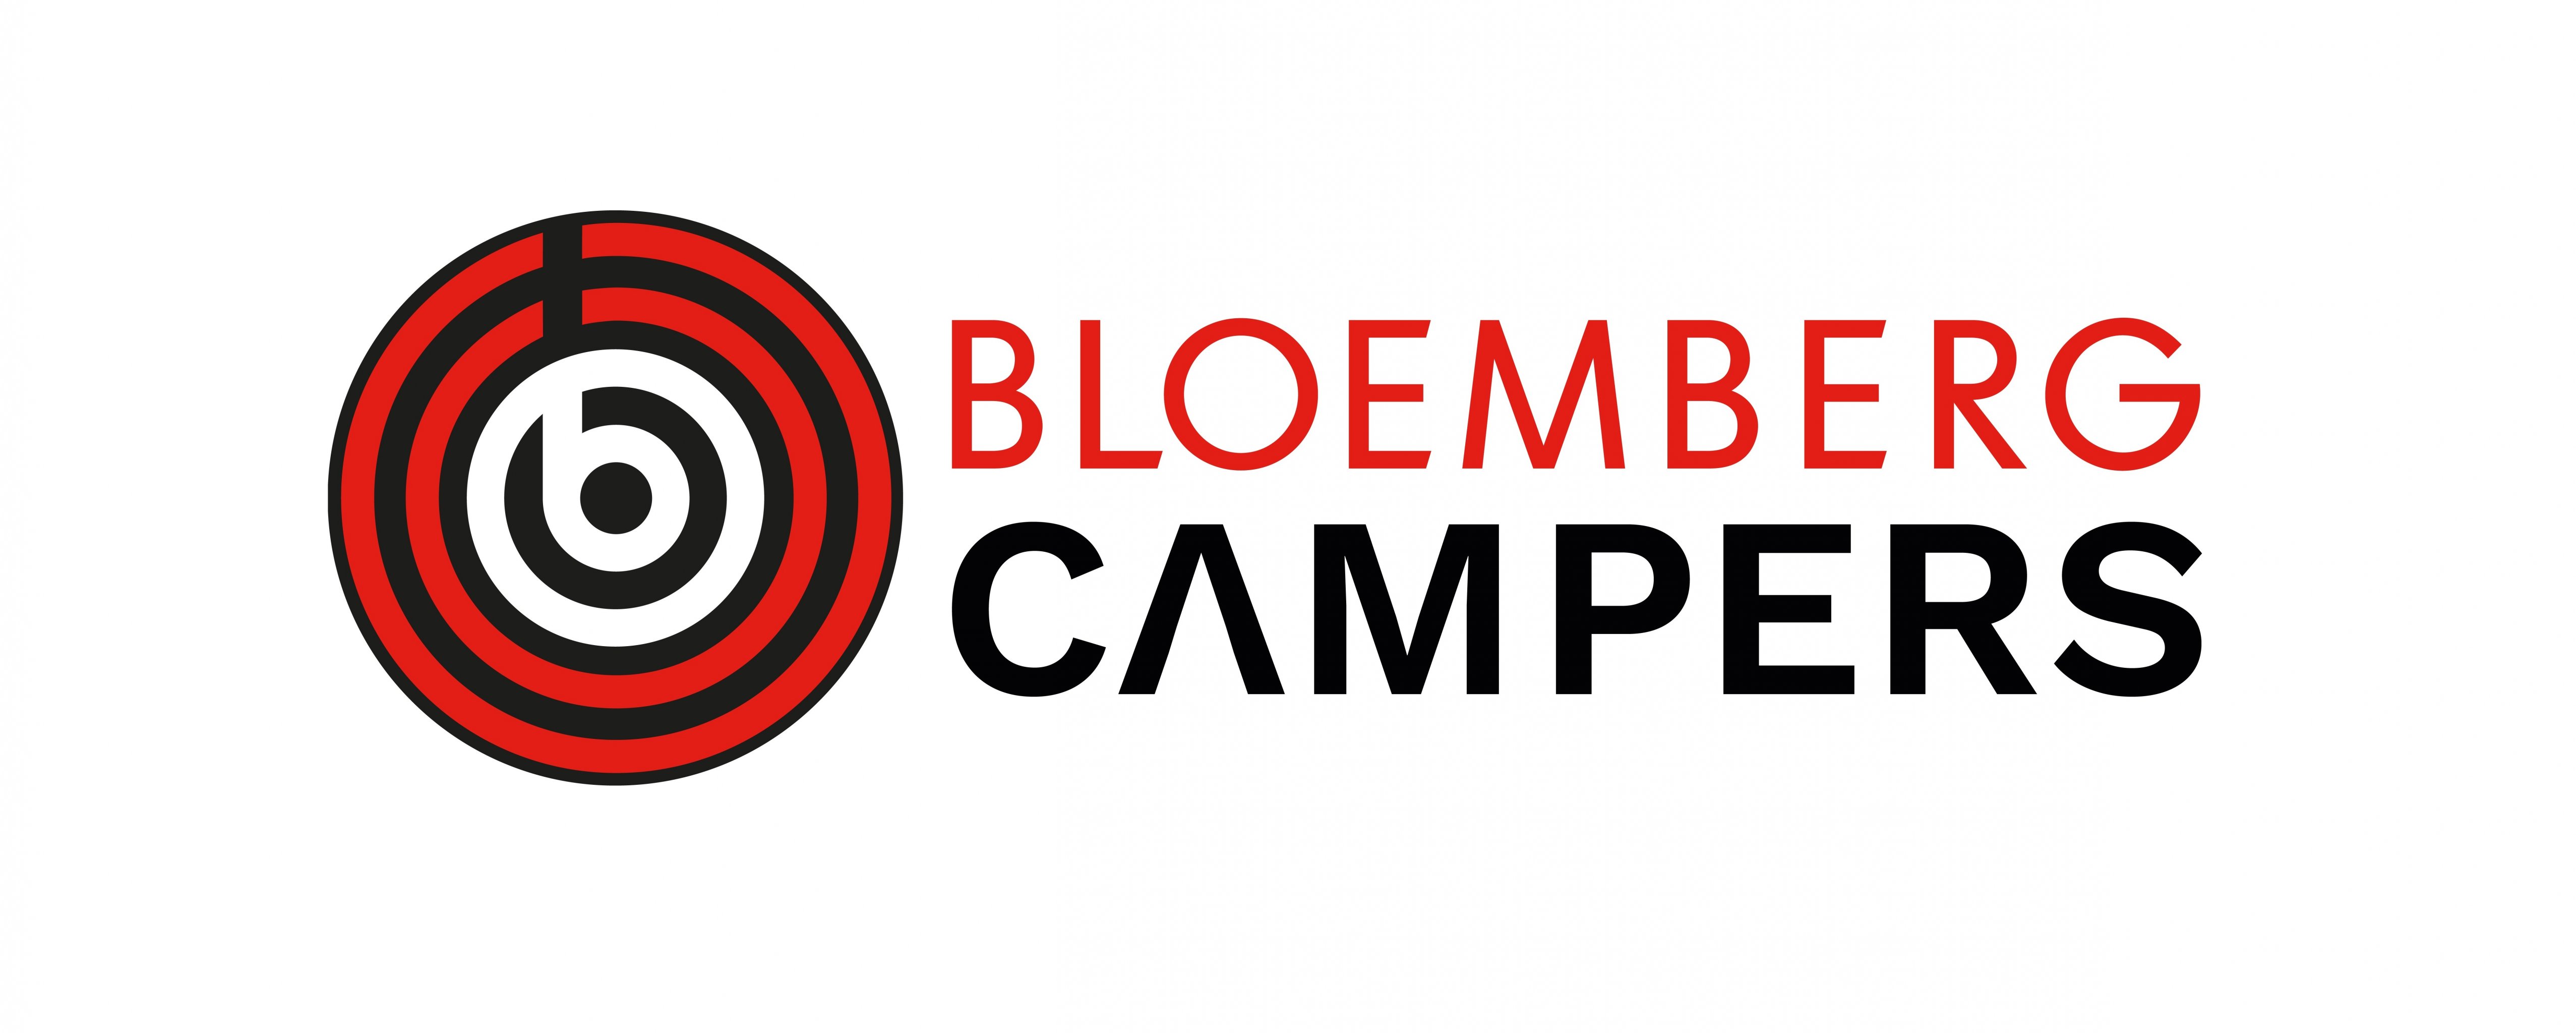 Bloemberg Campers